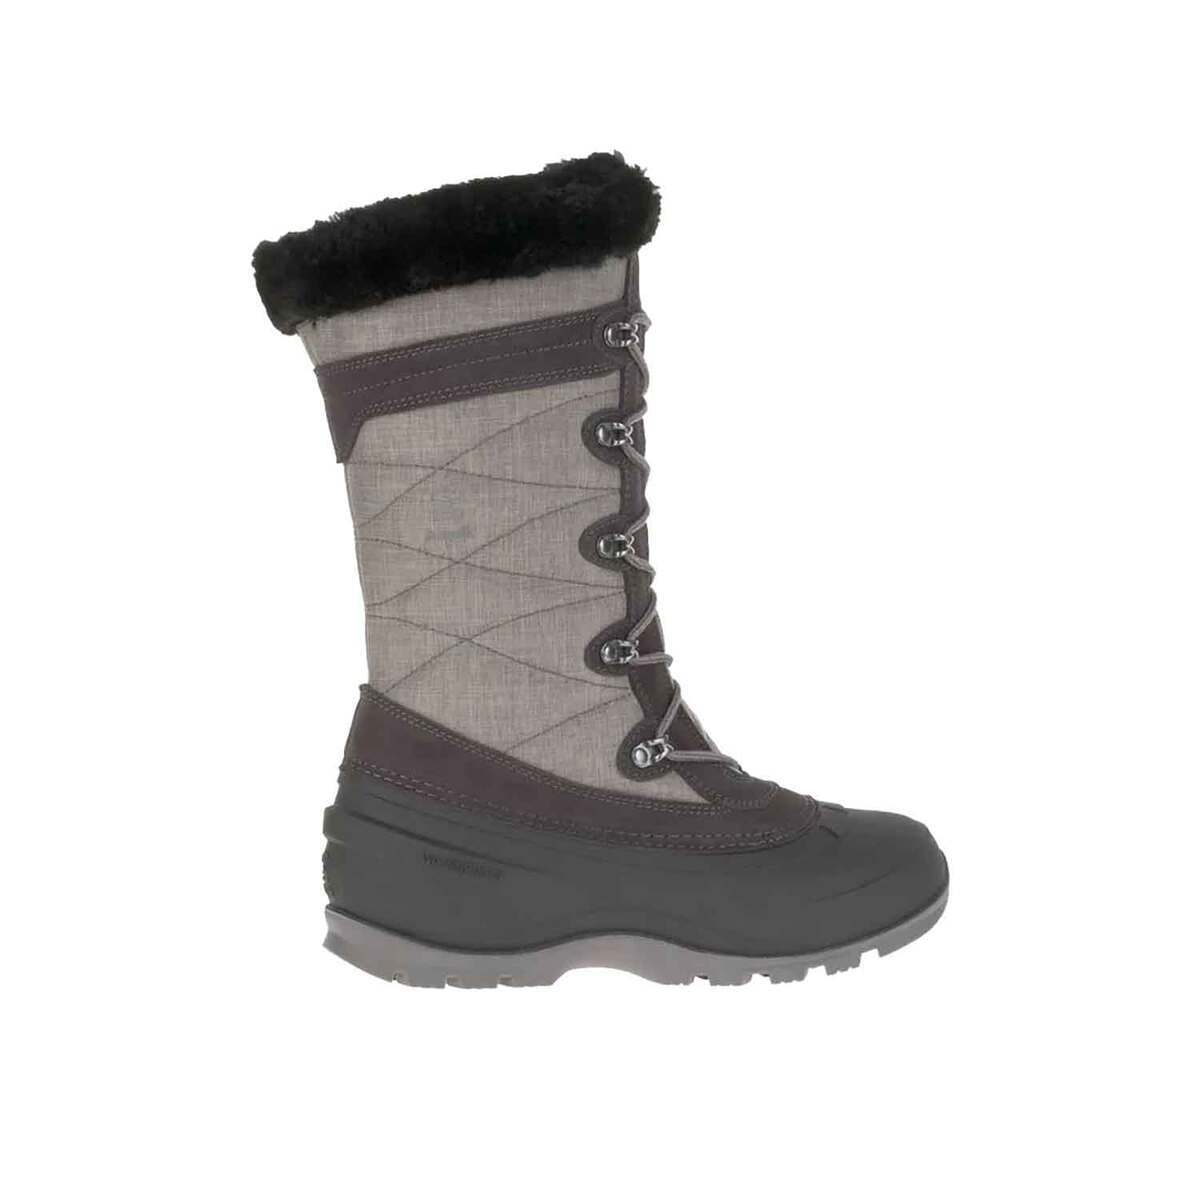 Kamik Women's SnowValley 4 Waterproof Winter Boots | Sportsman's Warehouse